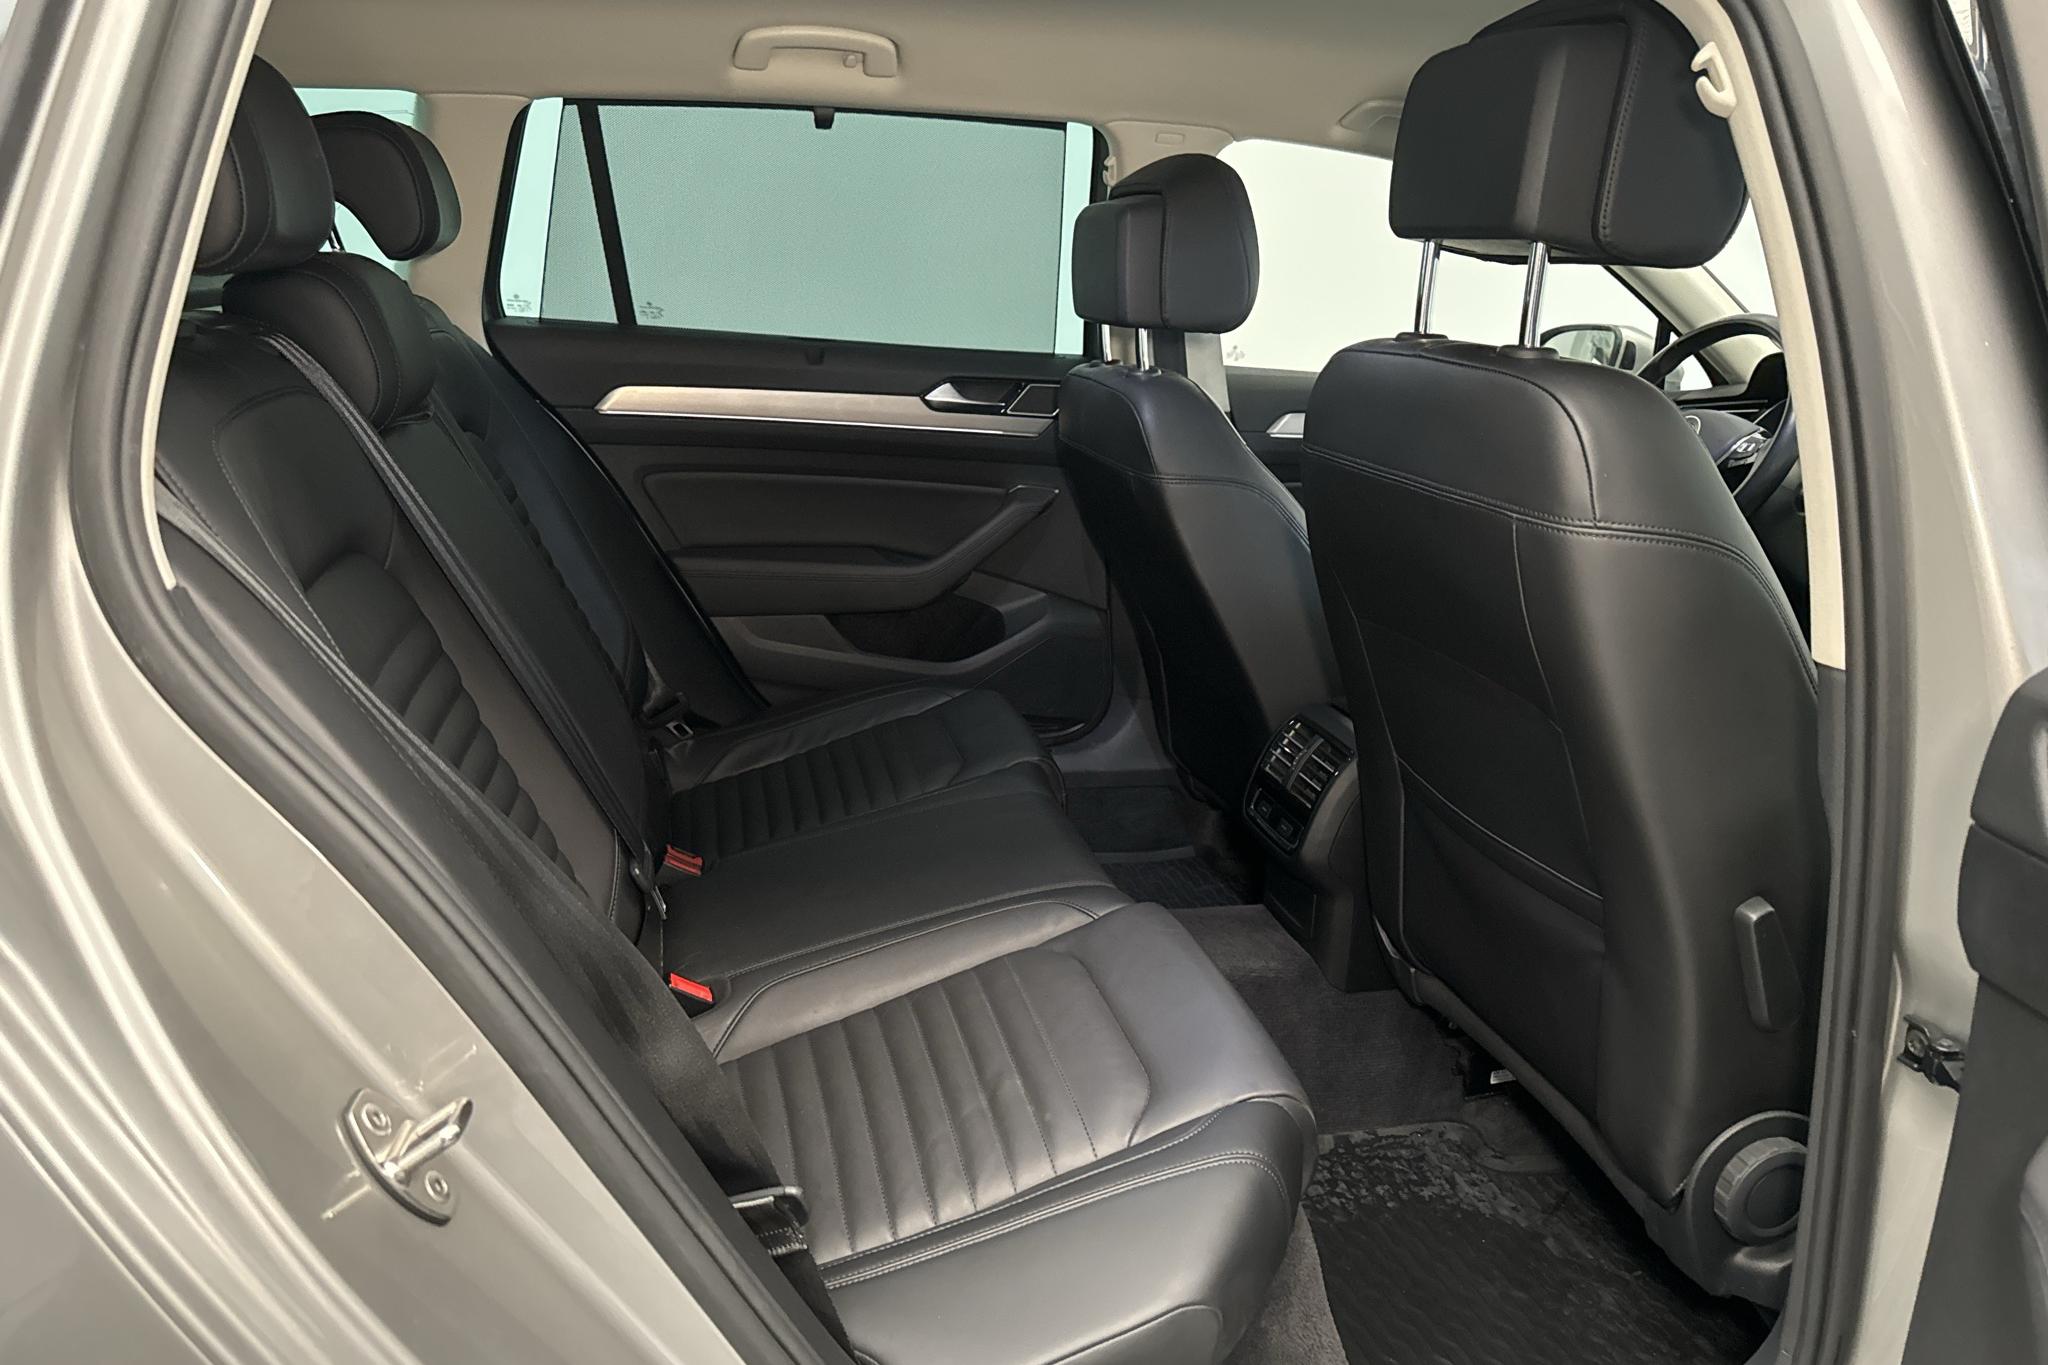 VW Passat 2.0 TDI Sportscombi 4MOTION (190hk) - 131 170 km - Automaattinen - hopea - 2015